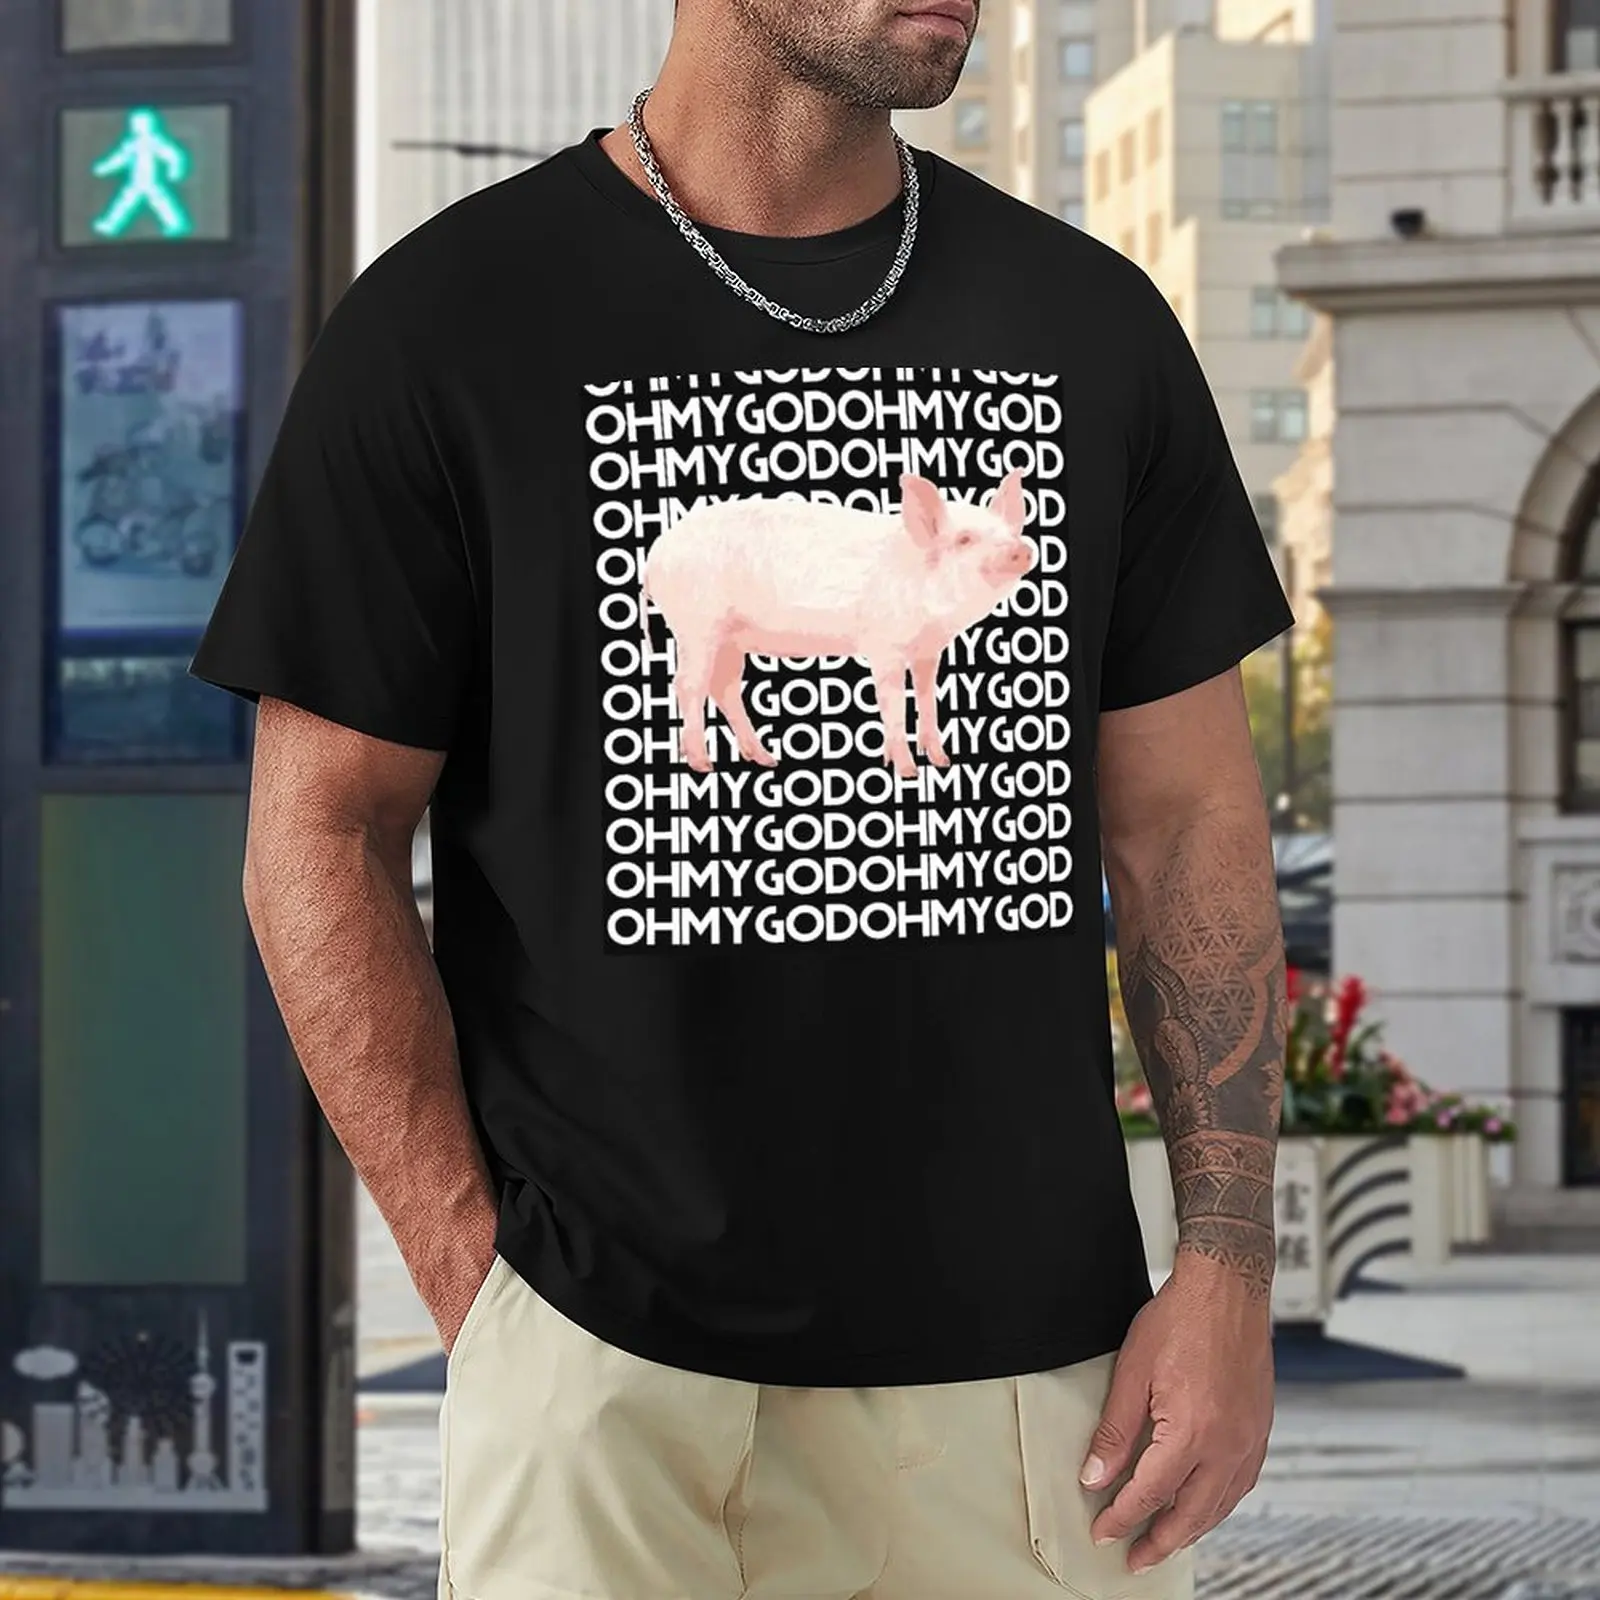 Футболка Шейн Доусон свинка О мой Бог футболка оверсайз s забавная футболка  свиная футболка графическая футболка черные футболки для мужчин | AliExpress